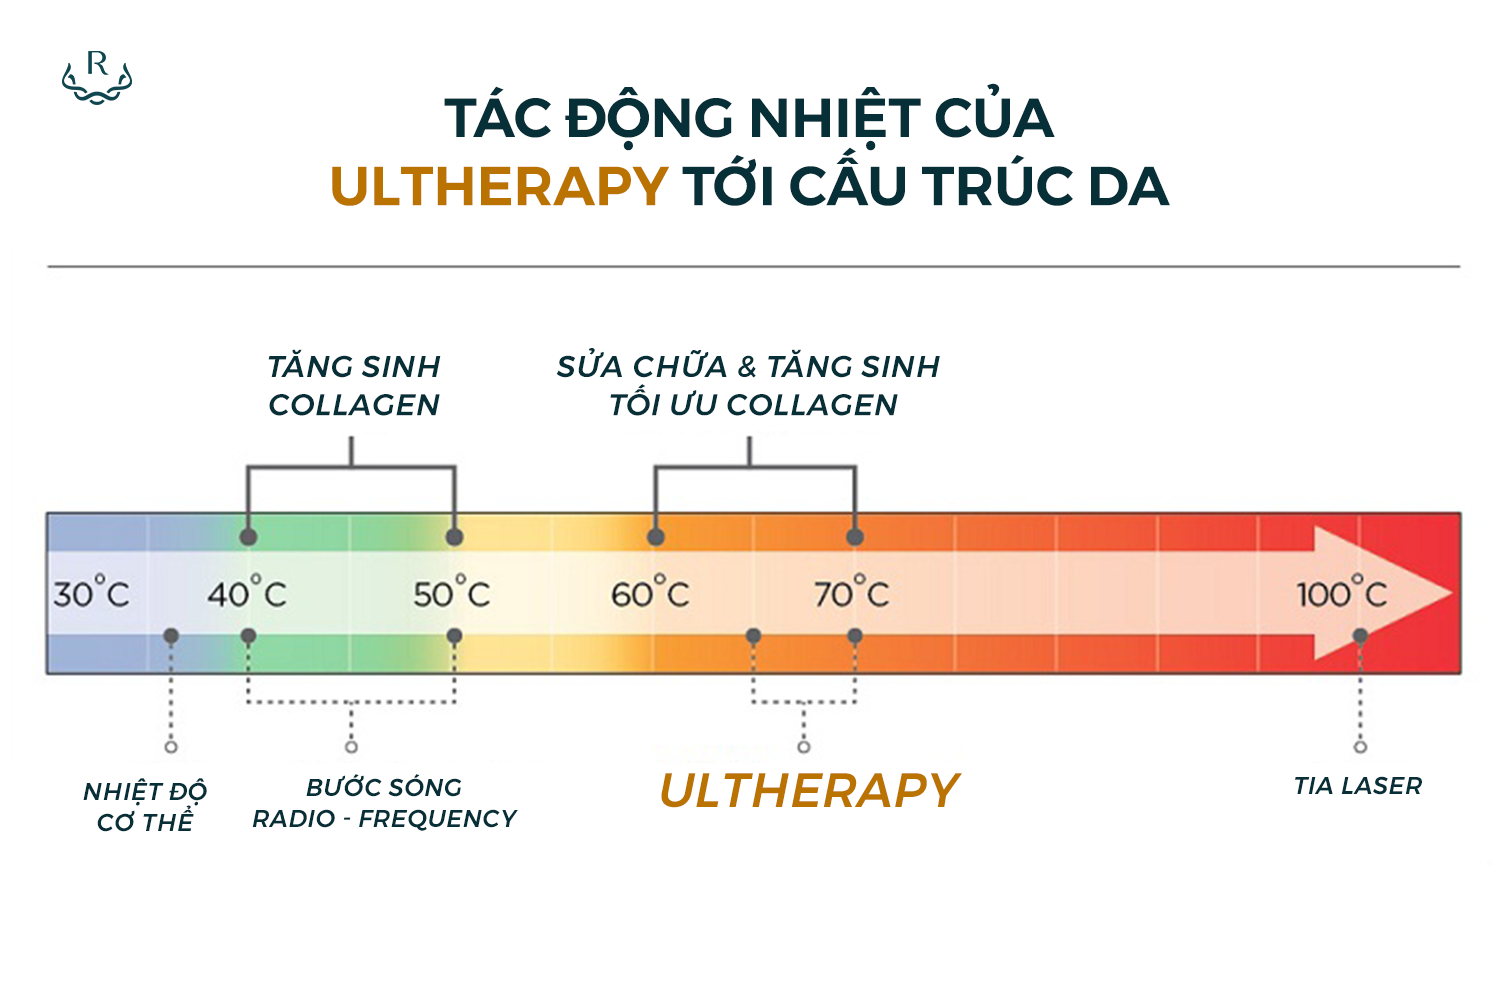 Tác động nhiệt của Ultherapy tới cấu trúc da